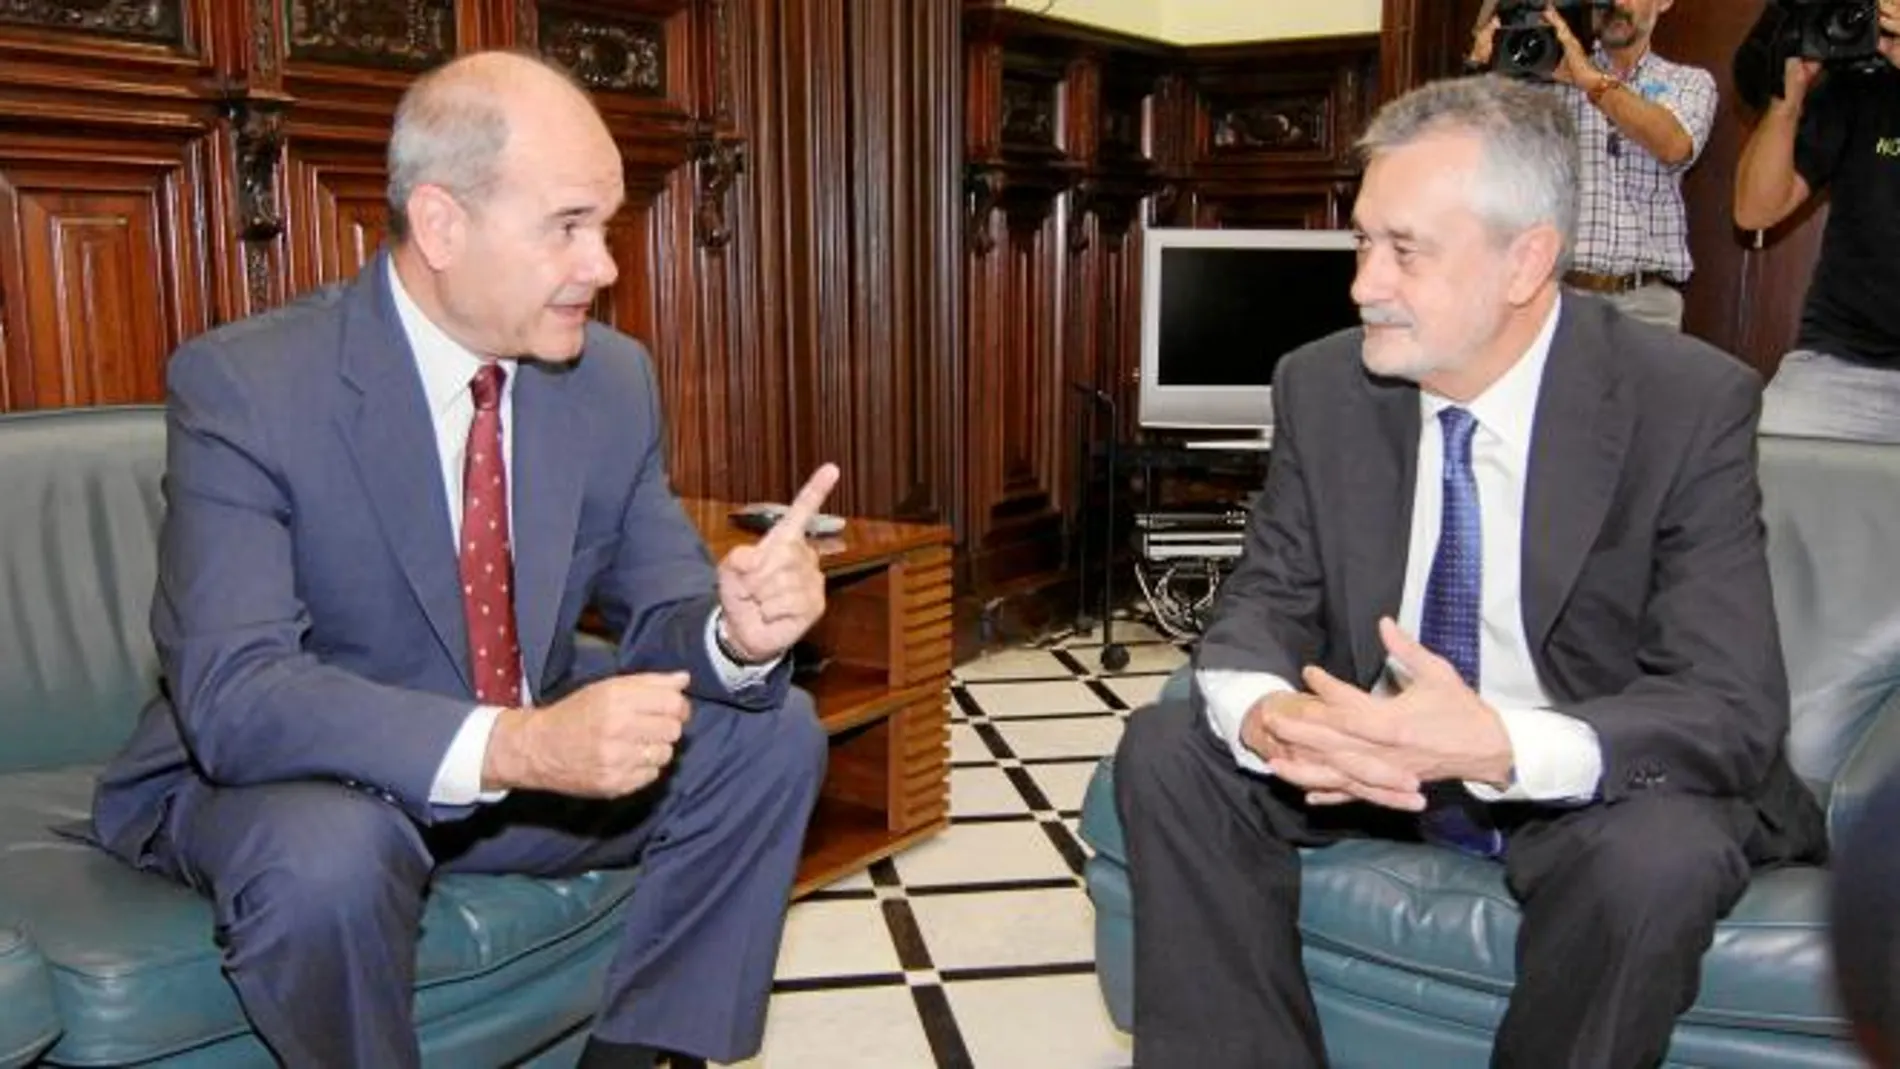 El ex presidente Manuel Chaves conversa con el actual, José Antonio Griñán